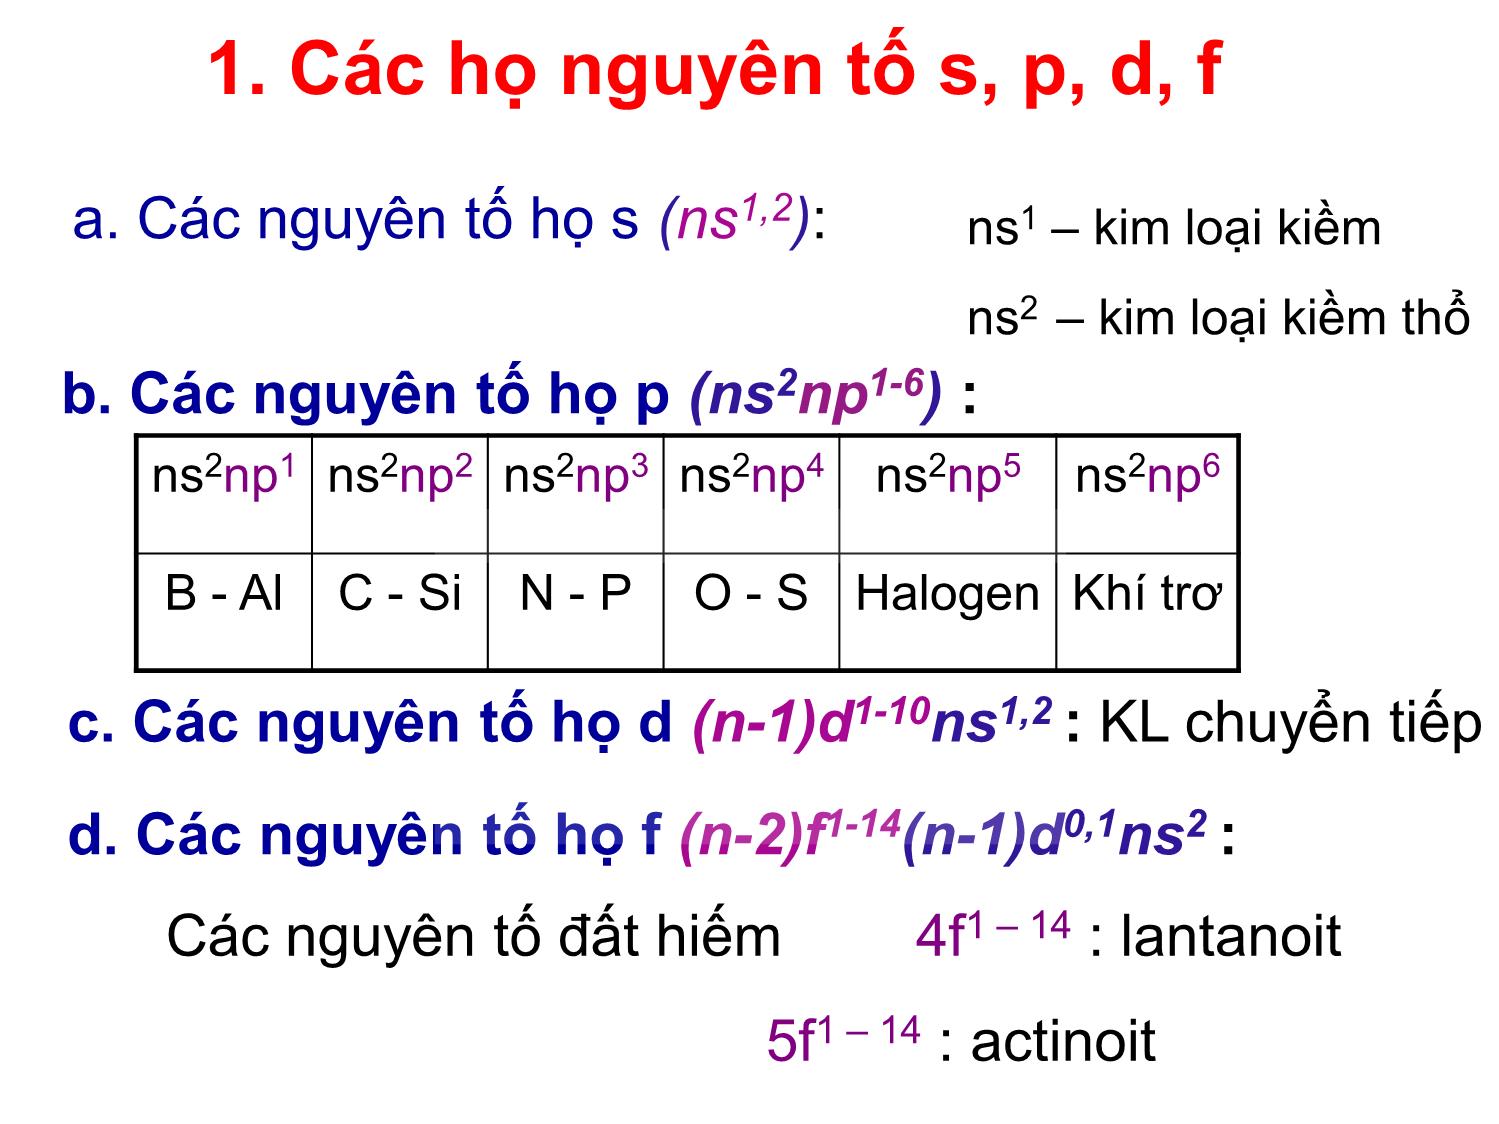 Bài giảng môn Hóa đại cương: Hệ thống tuần hoàn các nguyên tố hóa học - Nguyễn Minh Kha trang 8